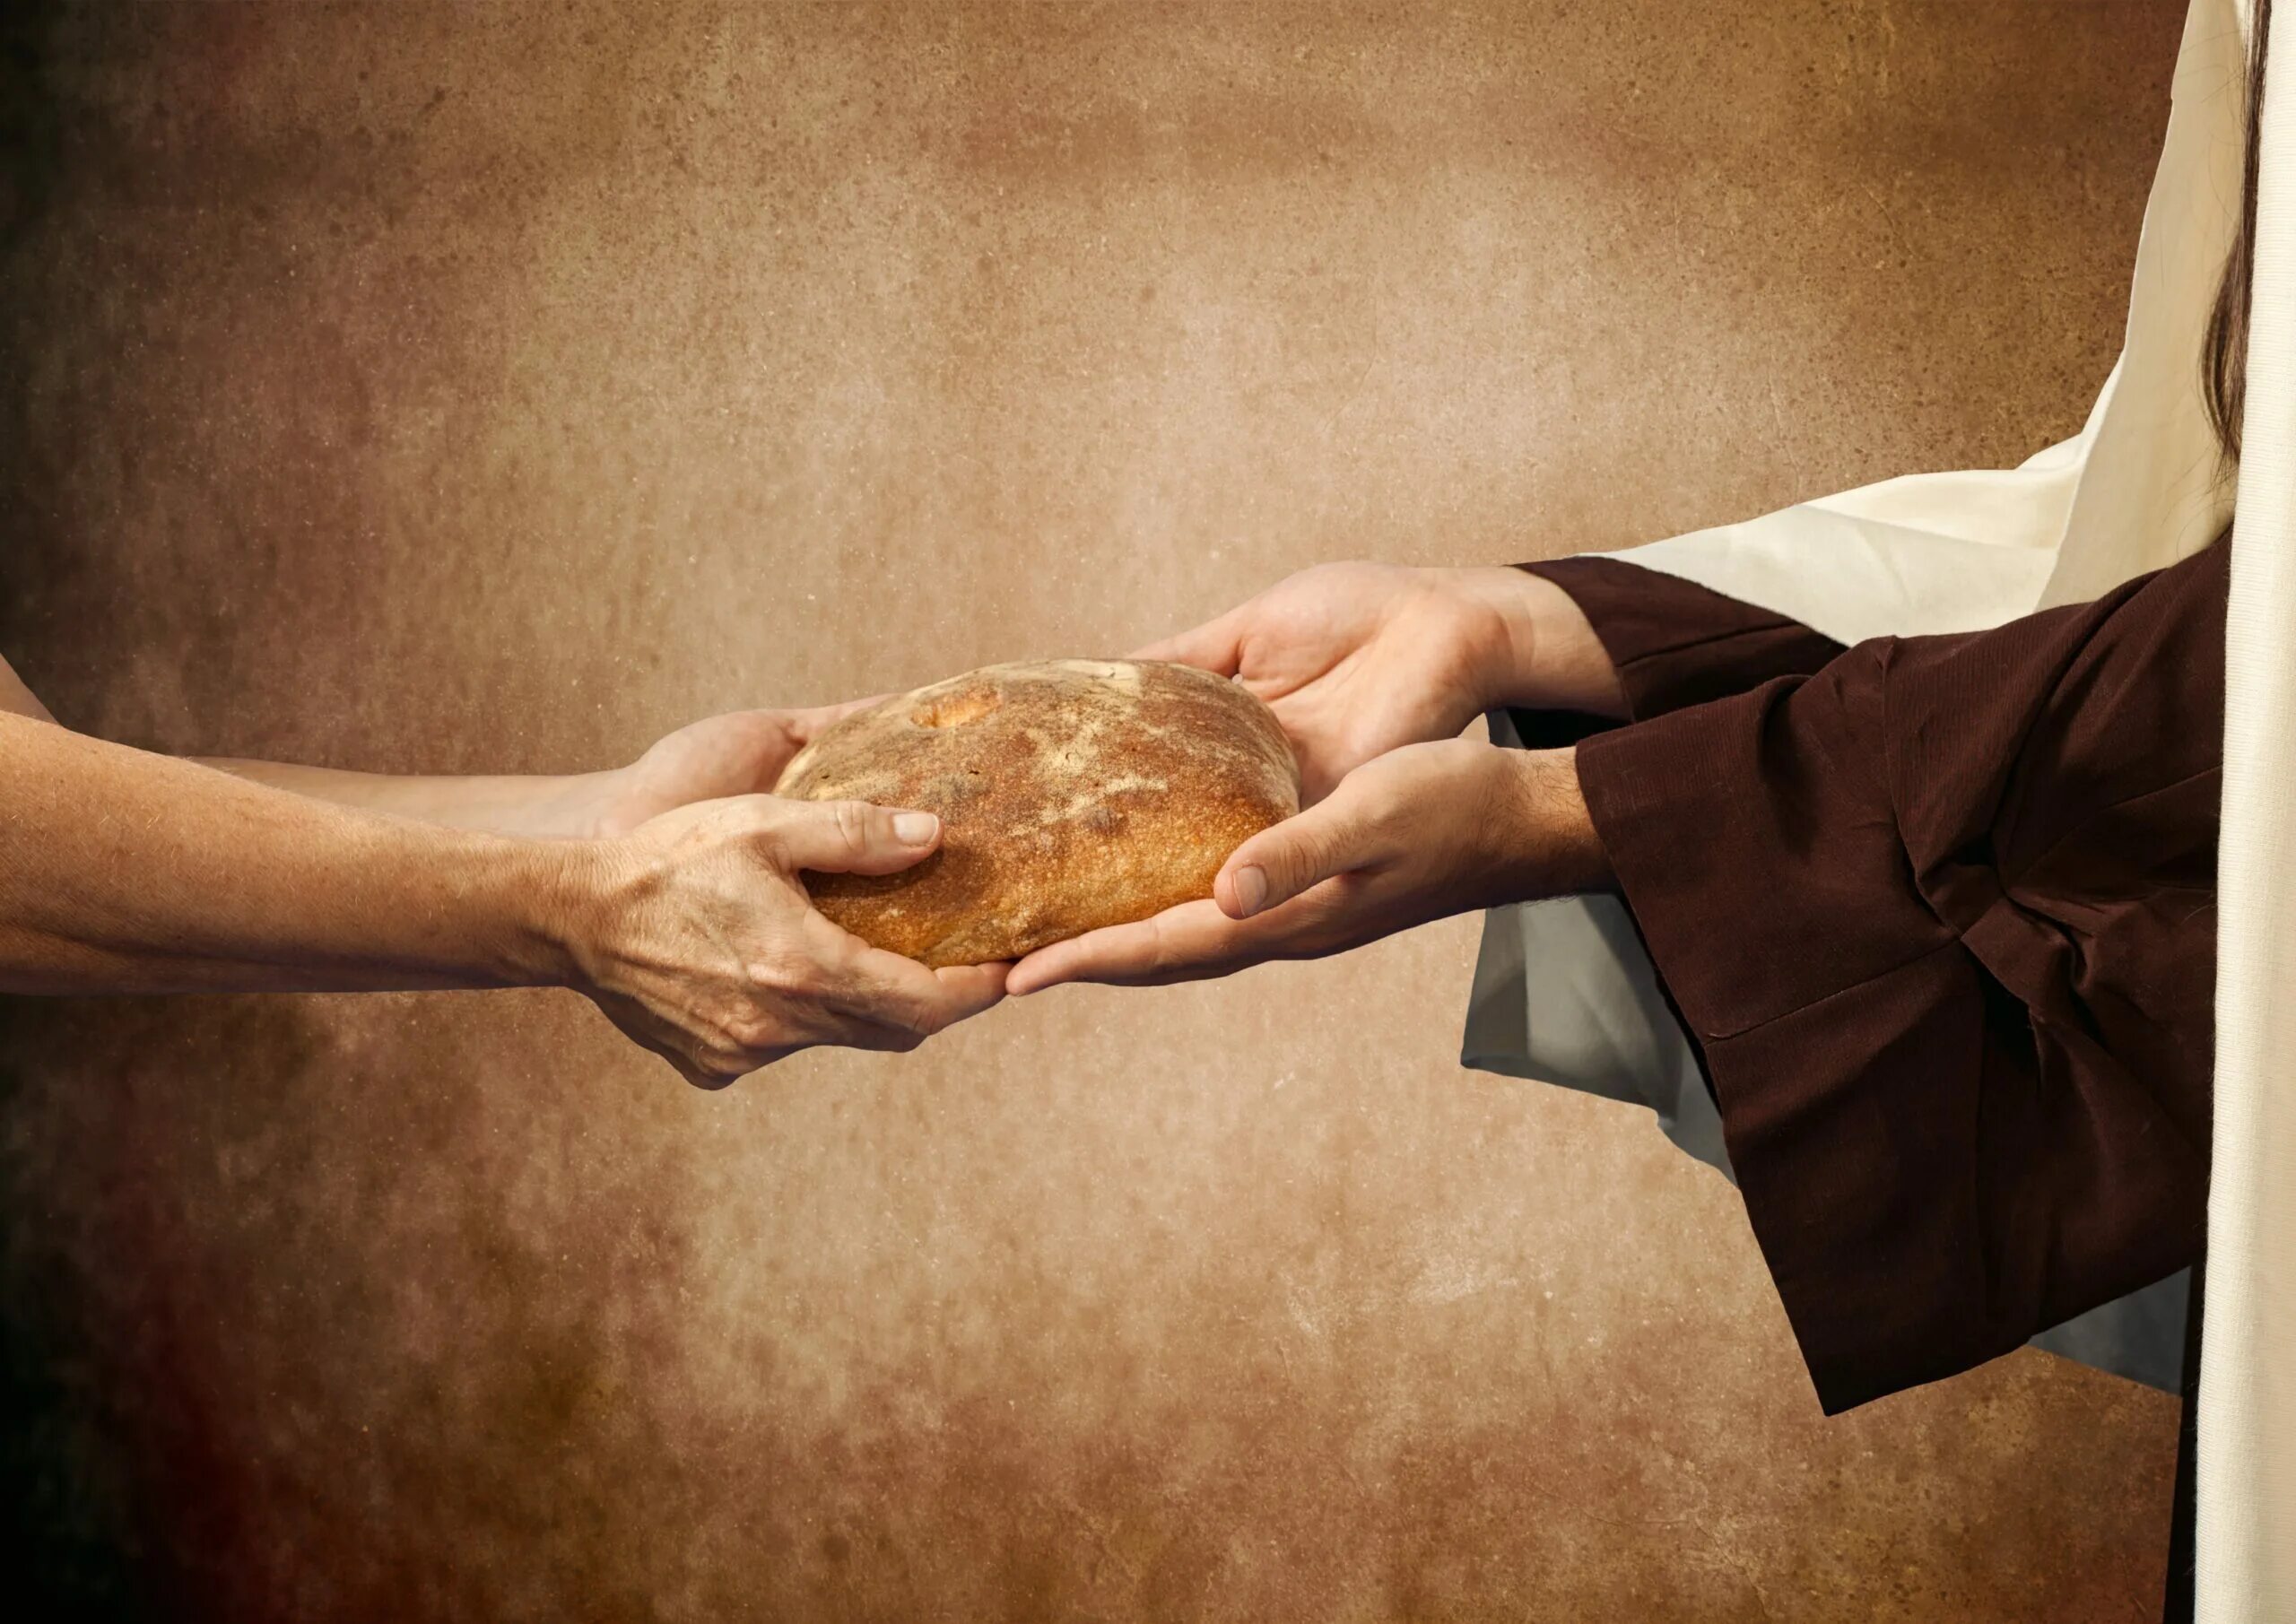 Хлеб в руках. Руки хлебобулочные изделия. Христос и хлеб. Делиться хлебом. Можно давать милостыню